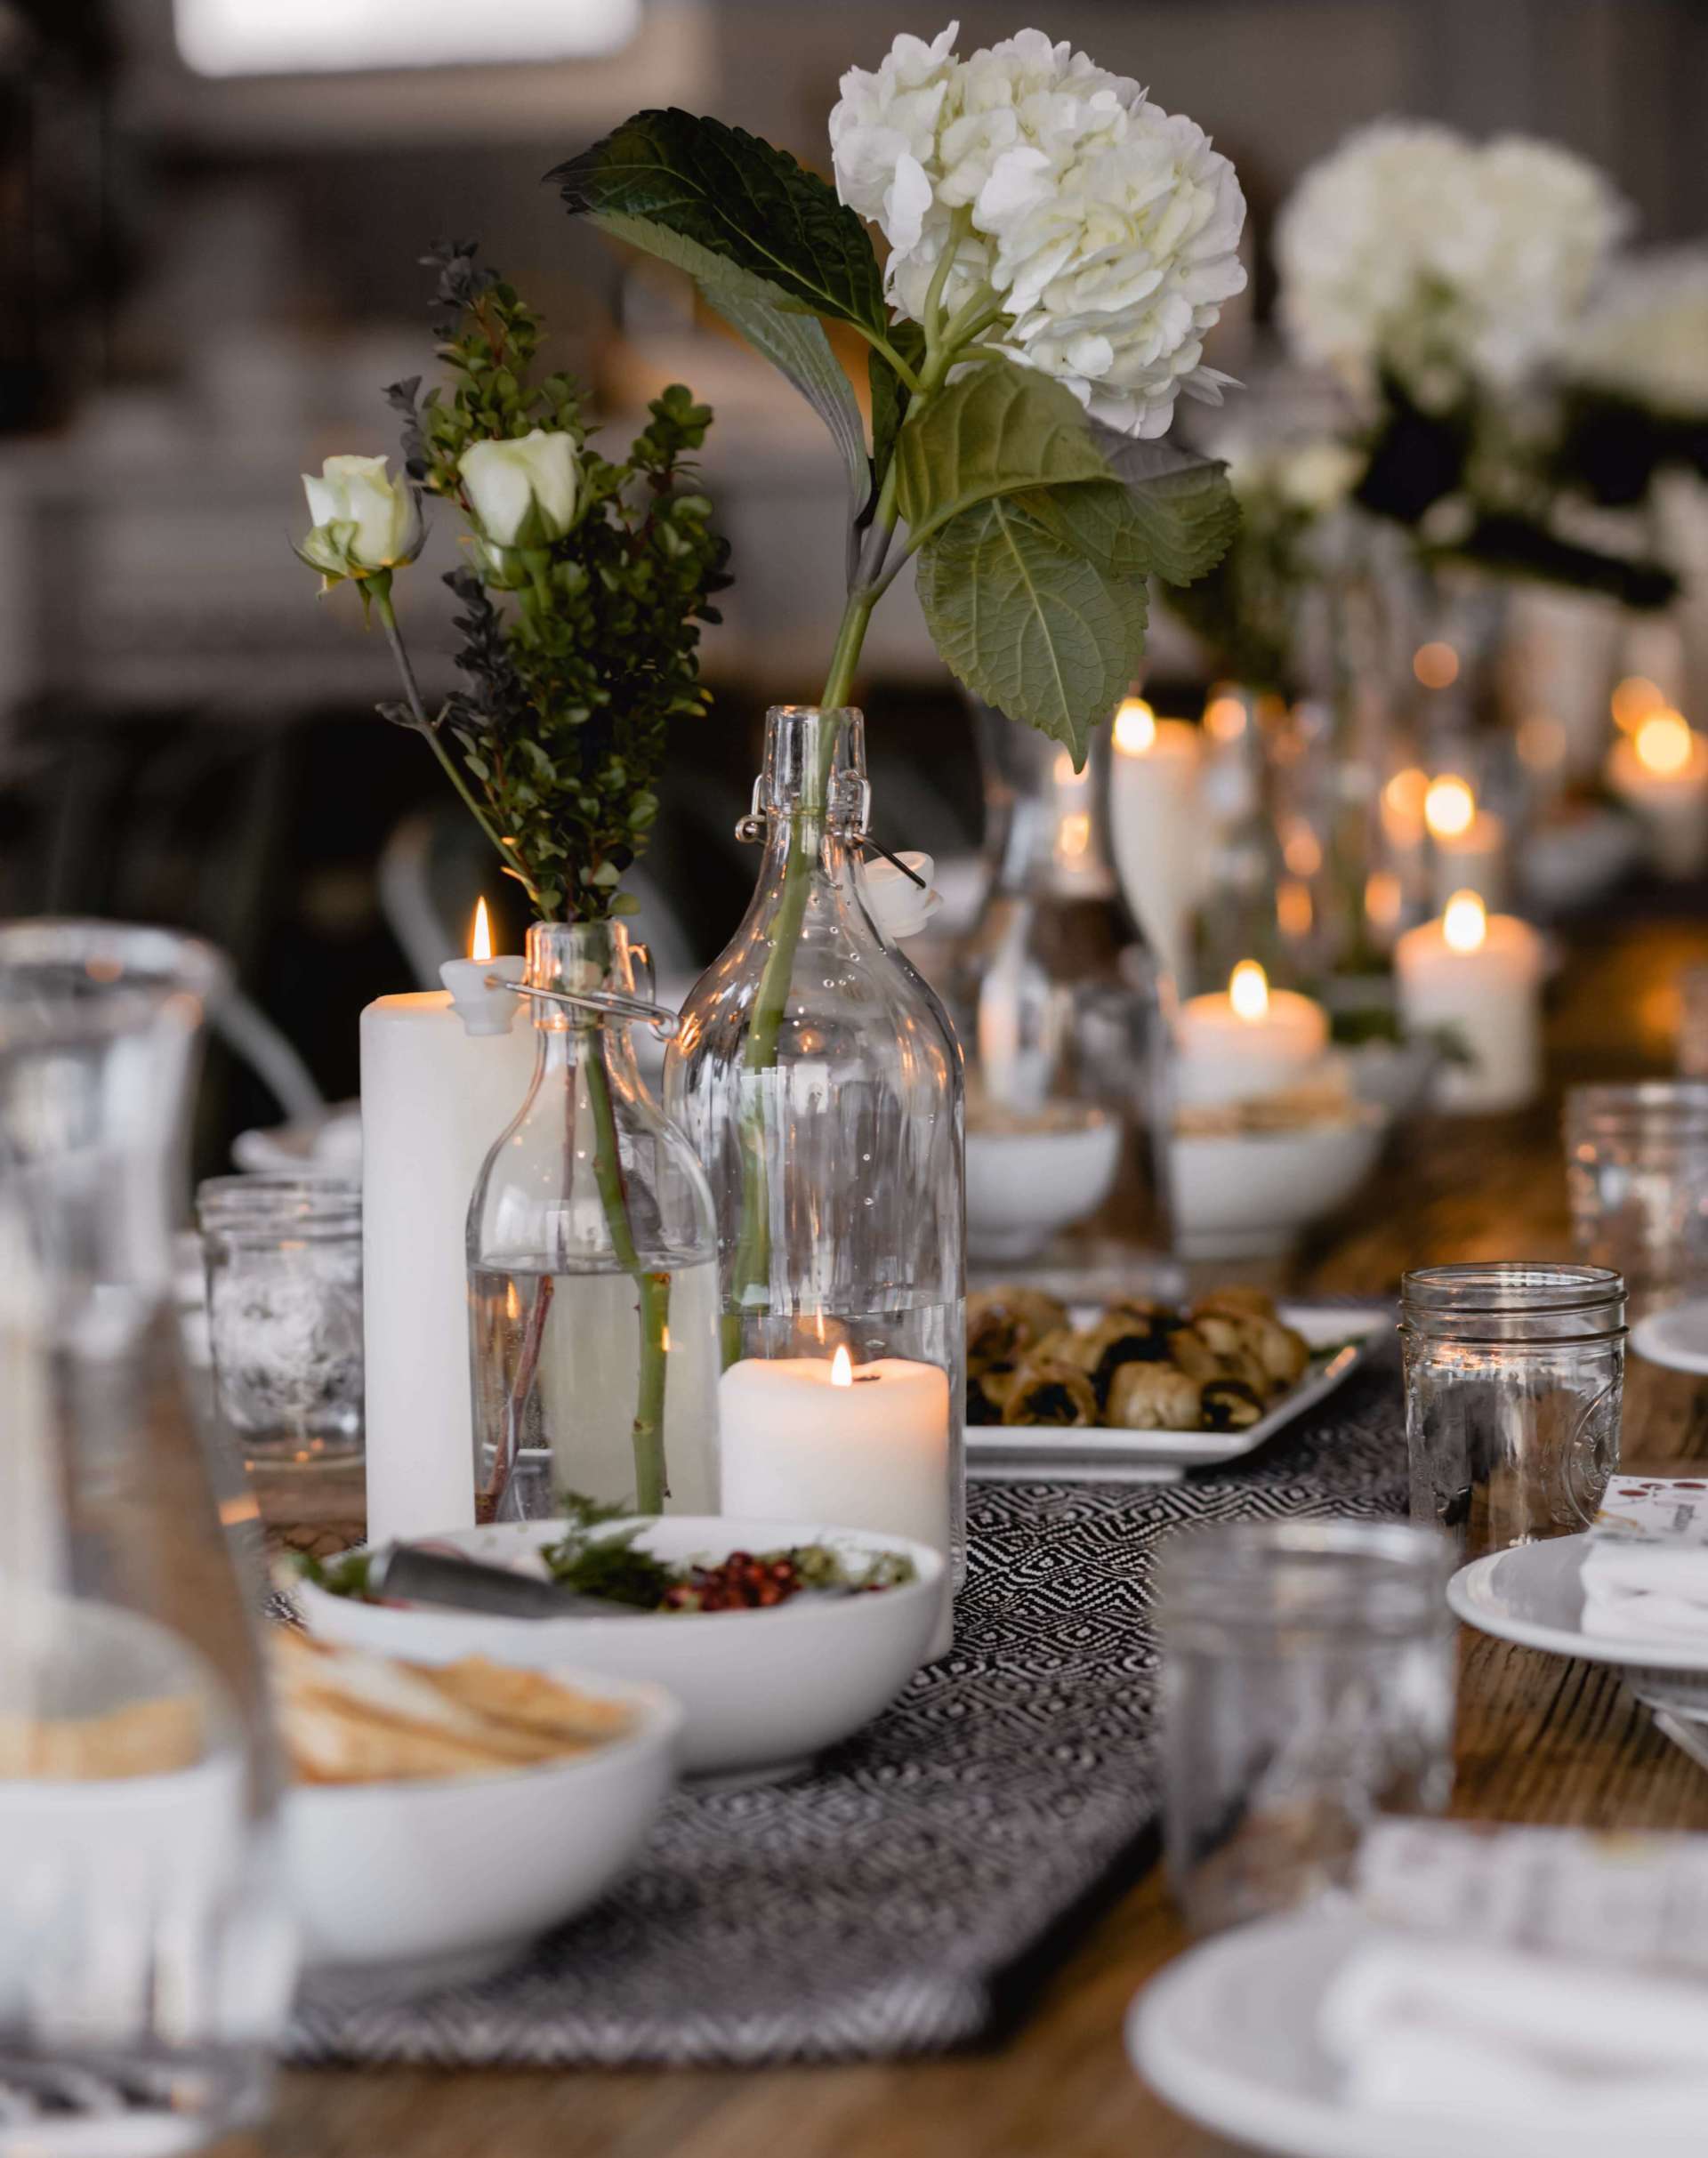 celebration of life vs funeral dinner table